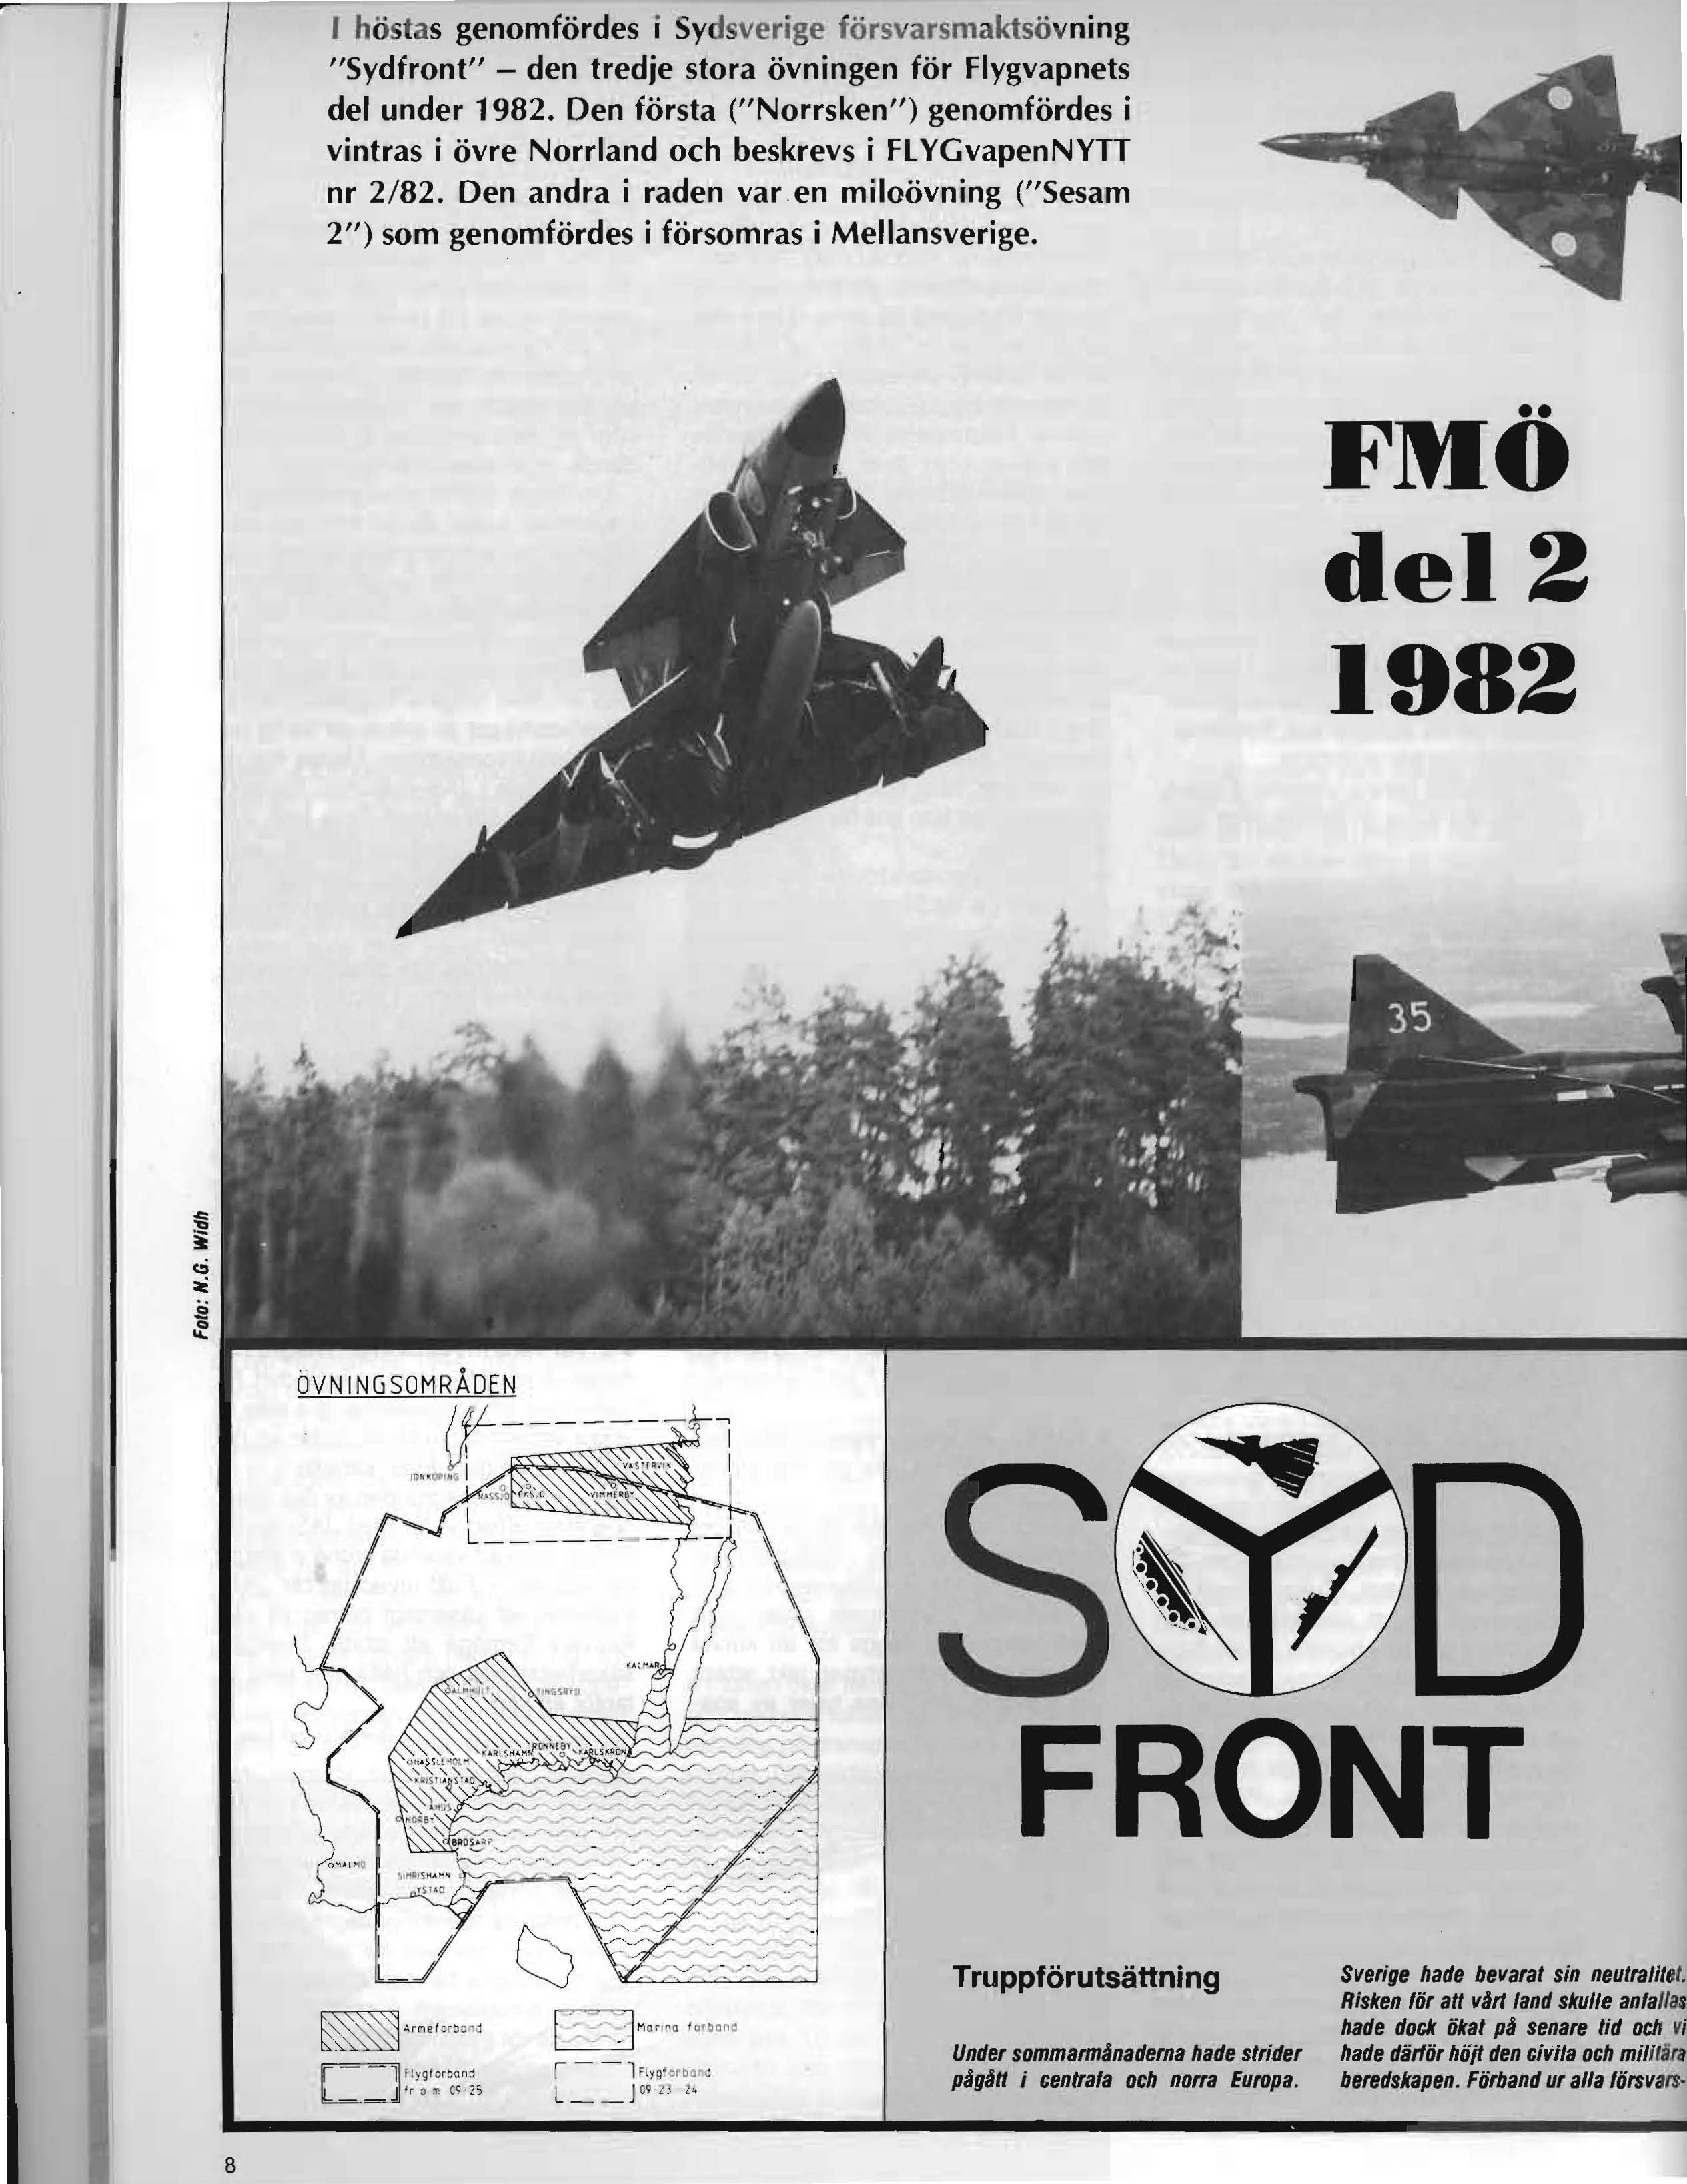 J höstas genomfördes i Sydsverige försvarsmaktsövning "Sydfront" - den tredje stora övningen för Flygvapnets del under 1982.